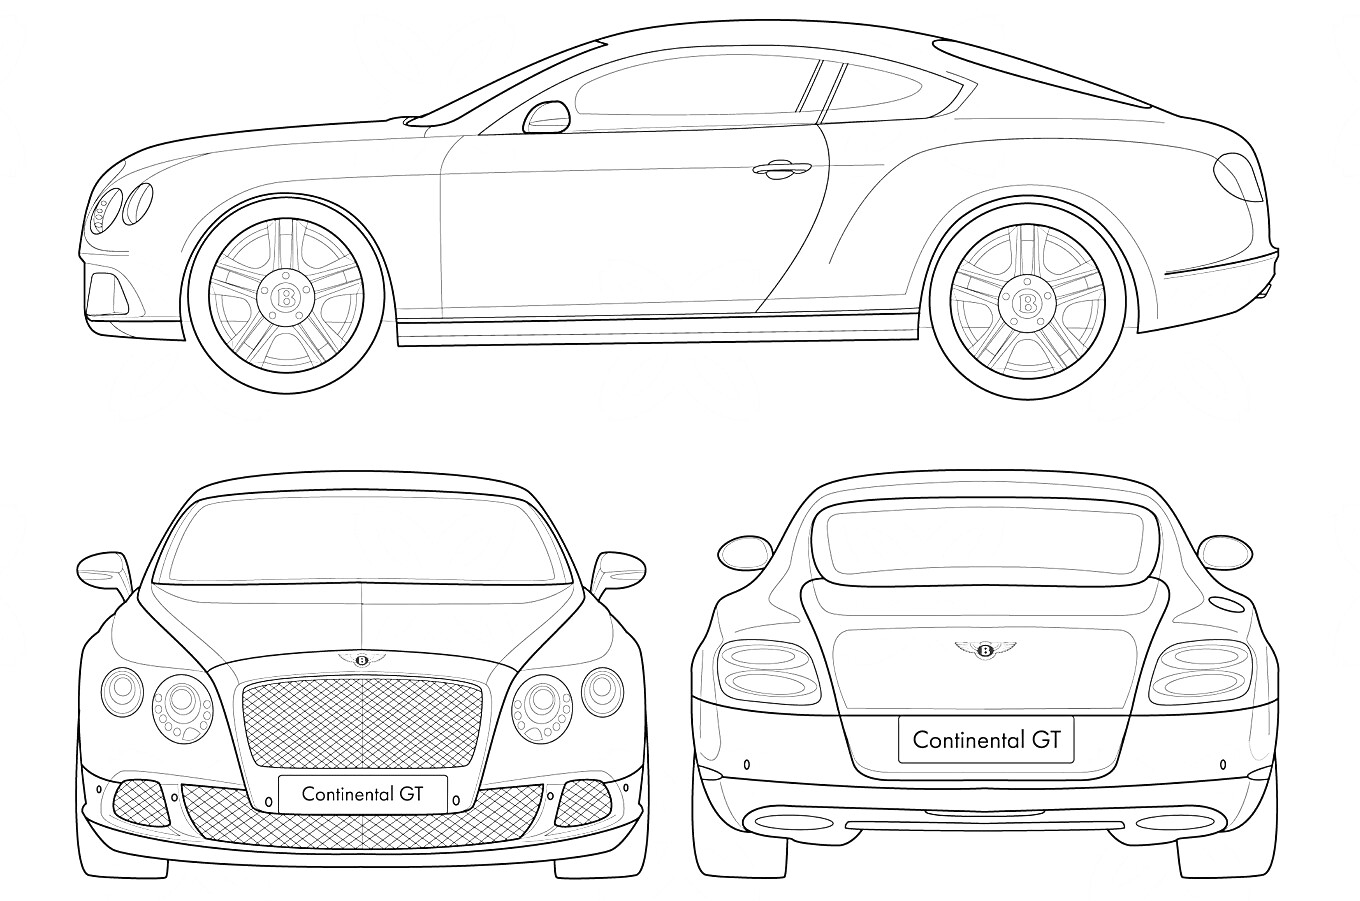 Раскраска Контурное изображение Bentley Continental GT с видами сбоку, спереди и сзади